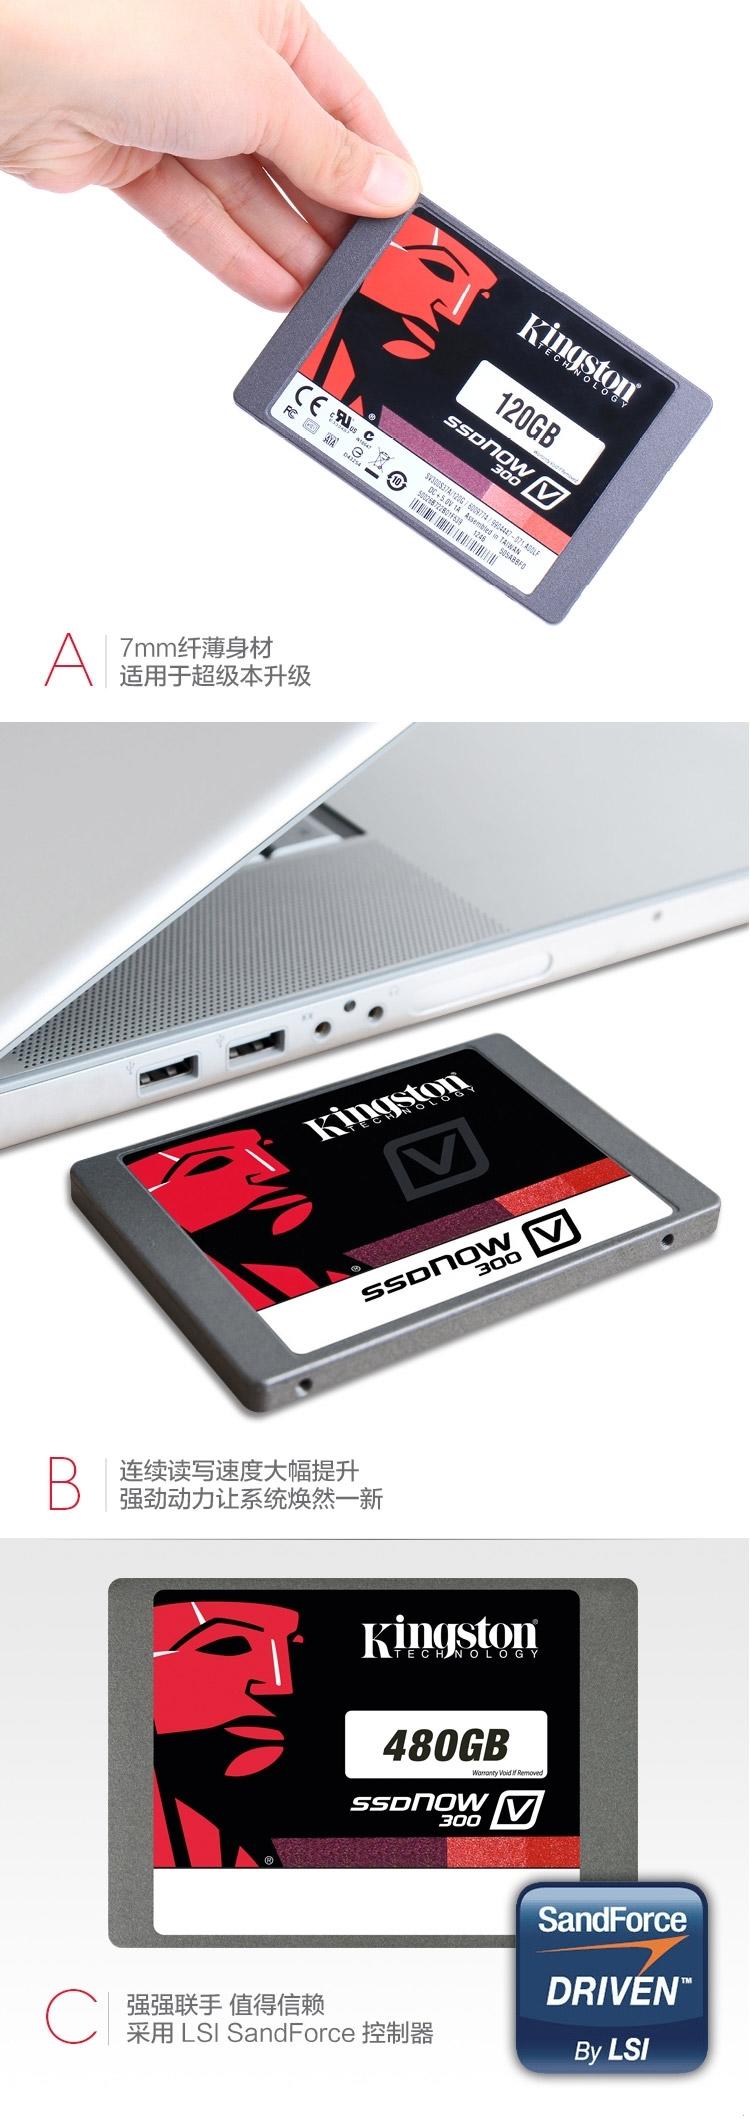 金士顿(Kingston)V300 240GB SATA3 固态硬盘